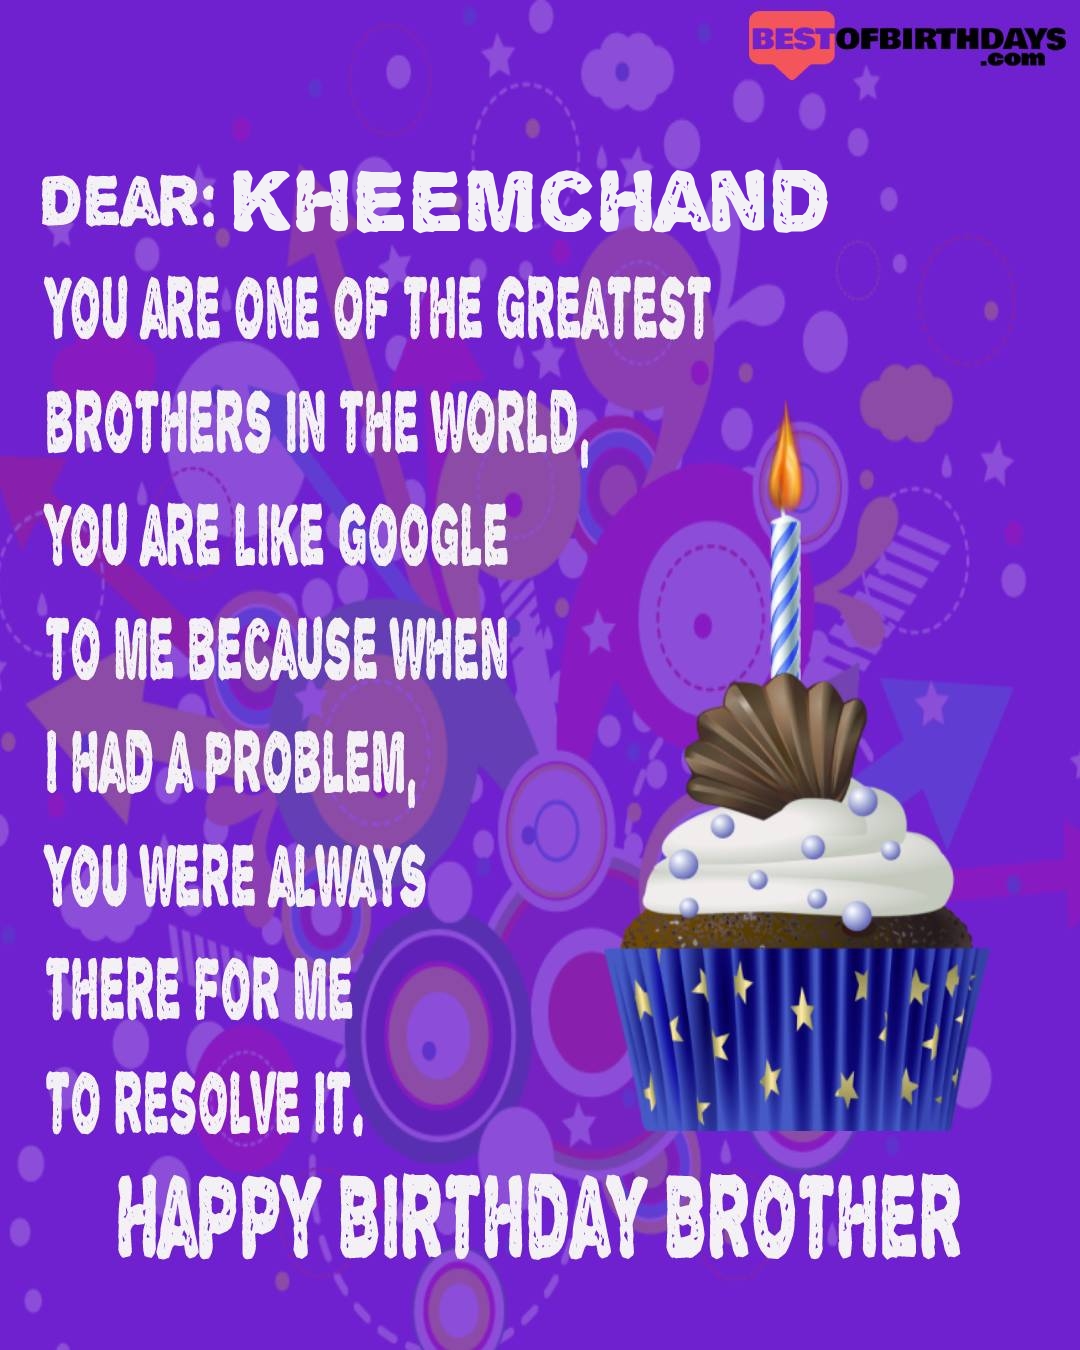 Happy birthday kheemchand bhai brother bro